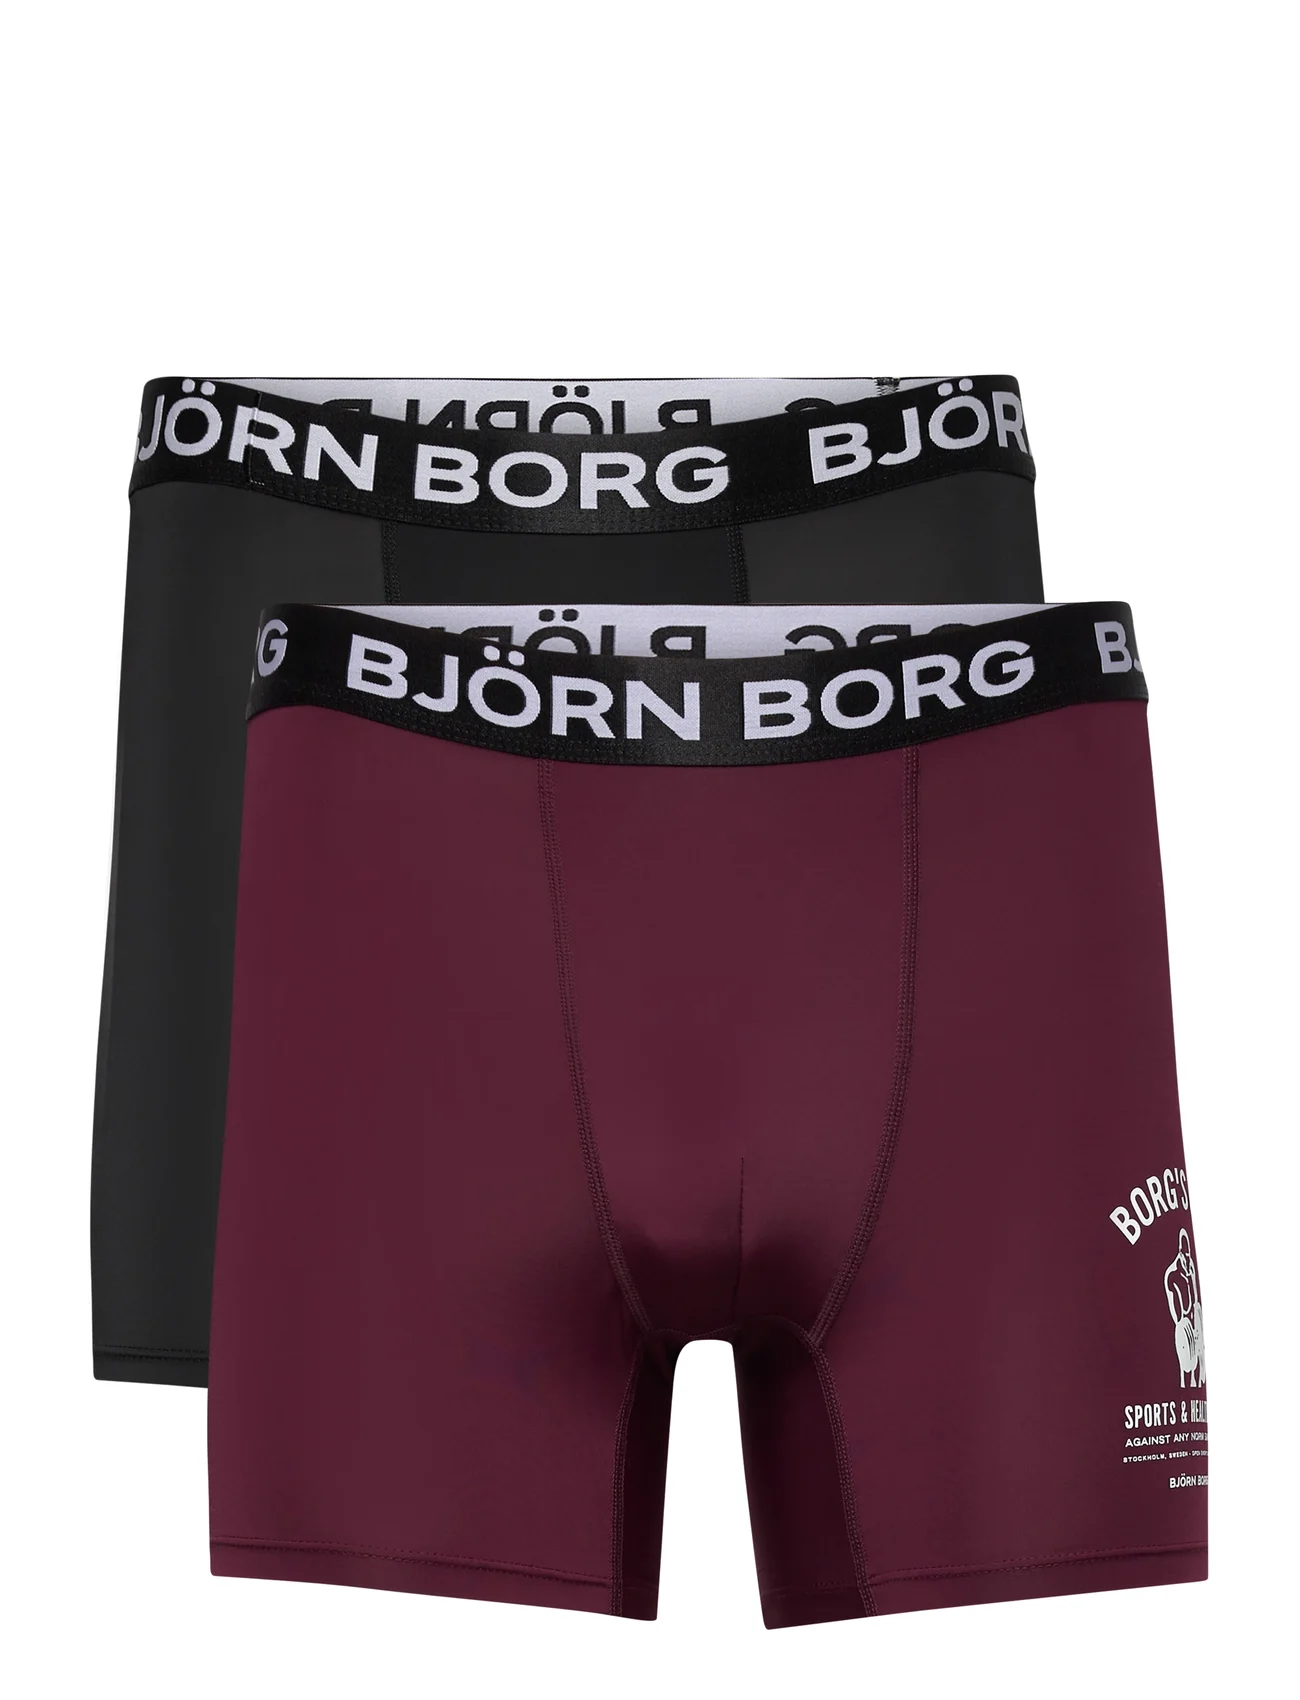 Skinnende at donere sektor Björn Borg Performance Boxer 2p (Multipack 2), 146.51 kr | Stort udvalg af  designer mærker | Booztlet.com